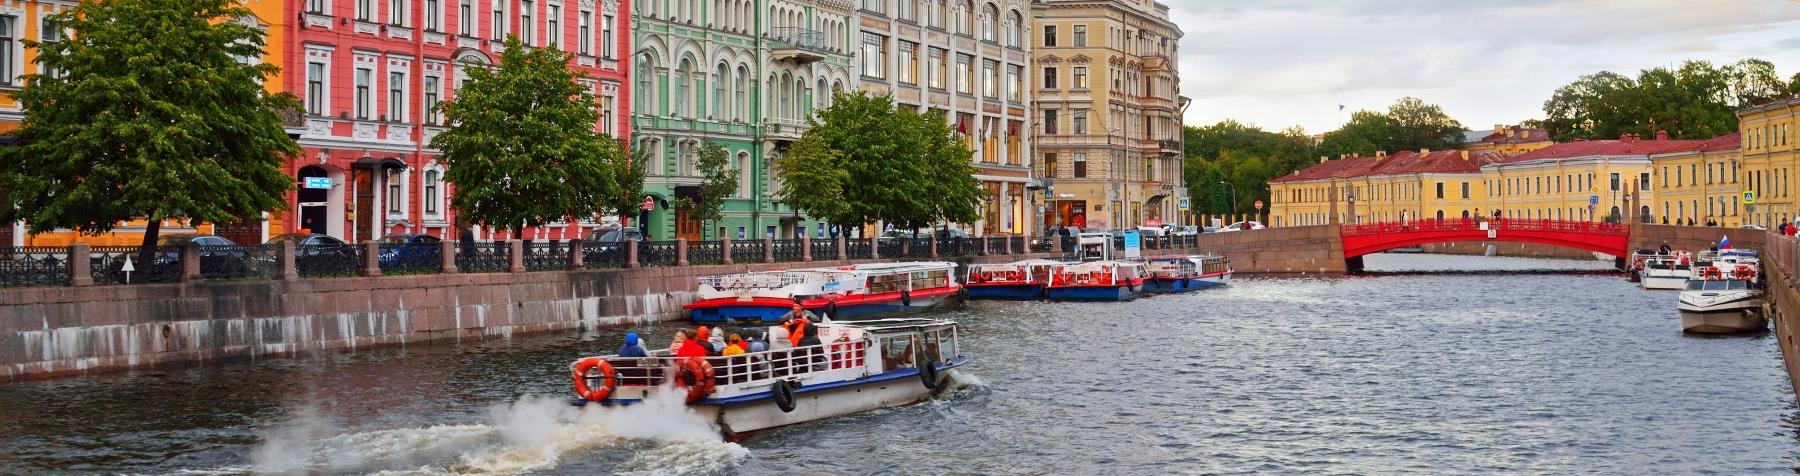 Дневные прогулки на теплоходе «Реки и каналы Петербурга» со скидкой до 57%